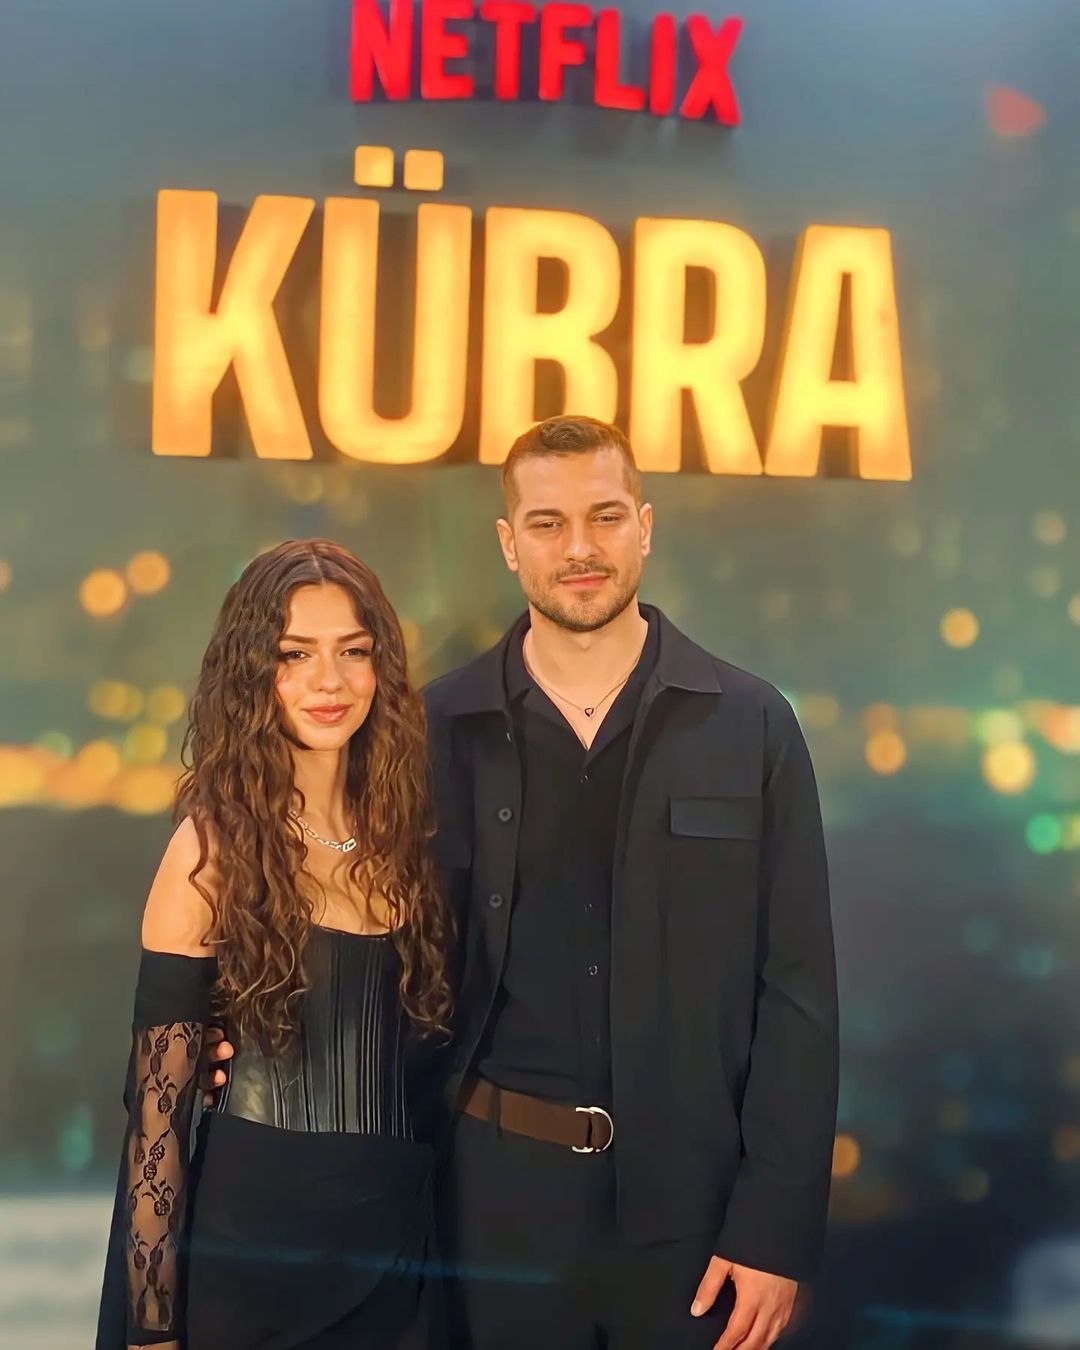 Kubra Netflix Review